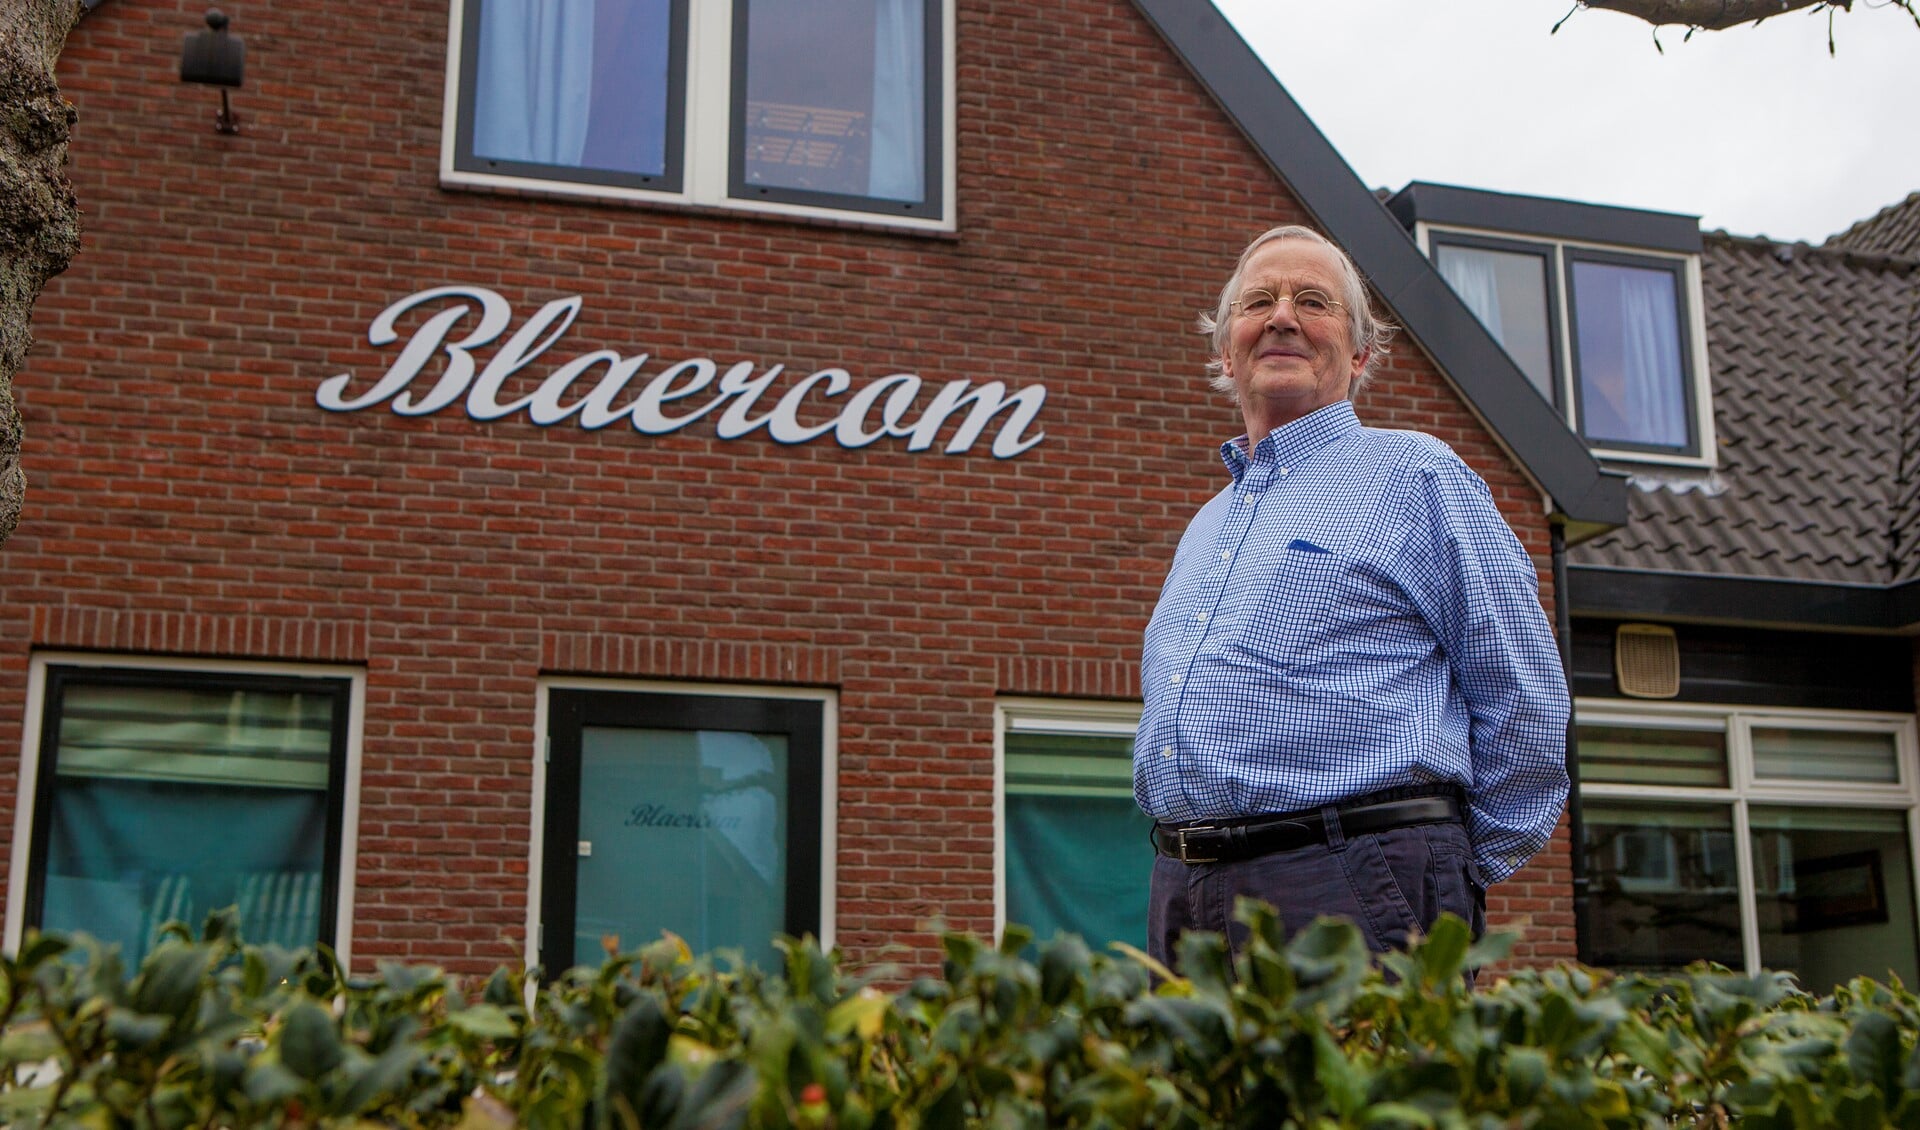 Blaercom-voorzitter Jan Heybroek: 